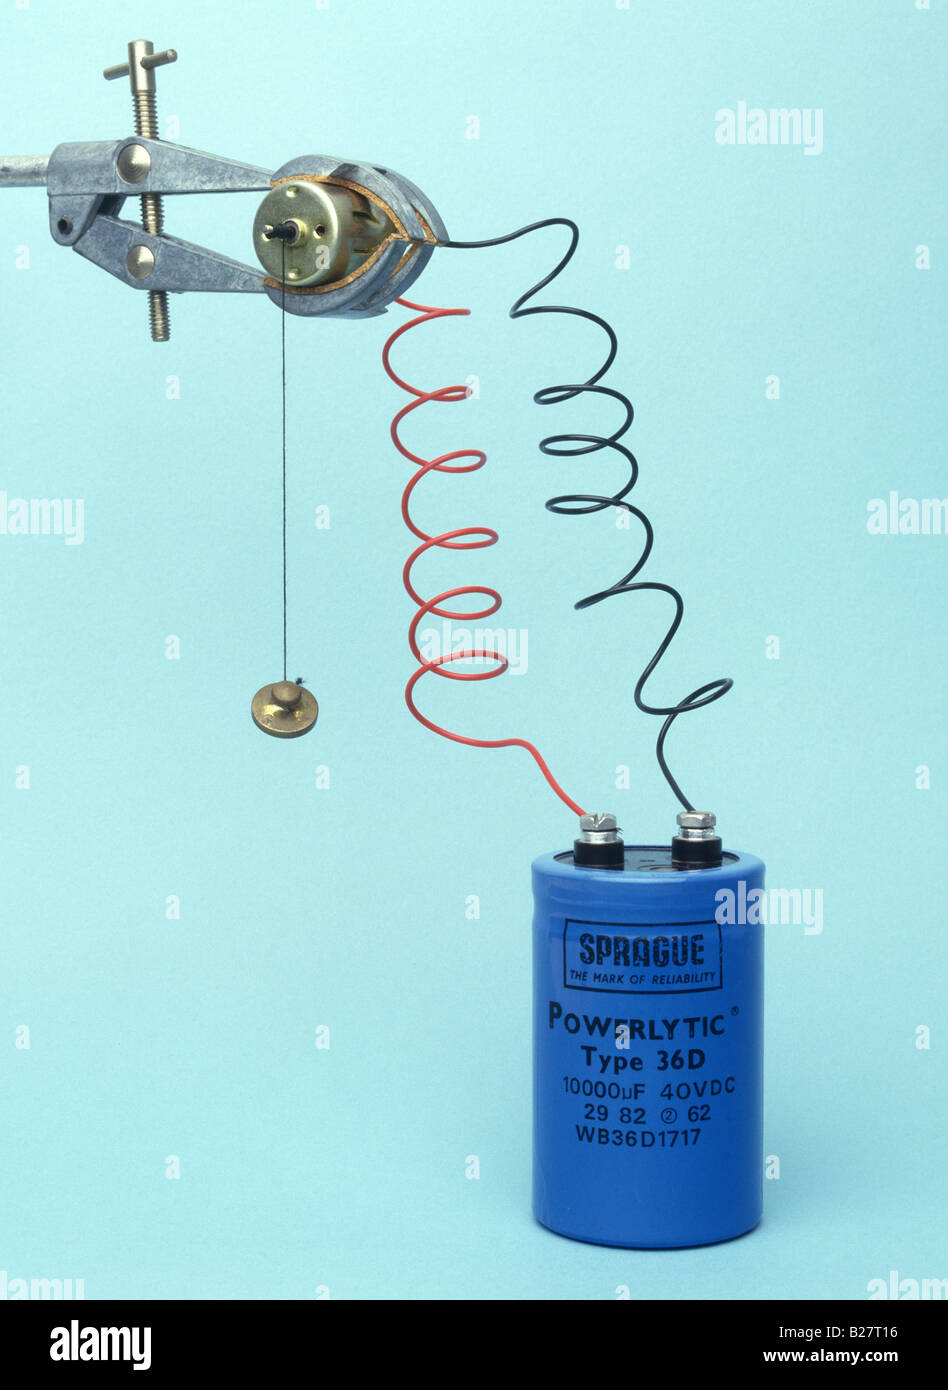 La energía eléctrica se almacena en un condensador se convierte en energía  mecánica que levanta un peso pequeño Fotografía de stock - Alamy